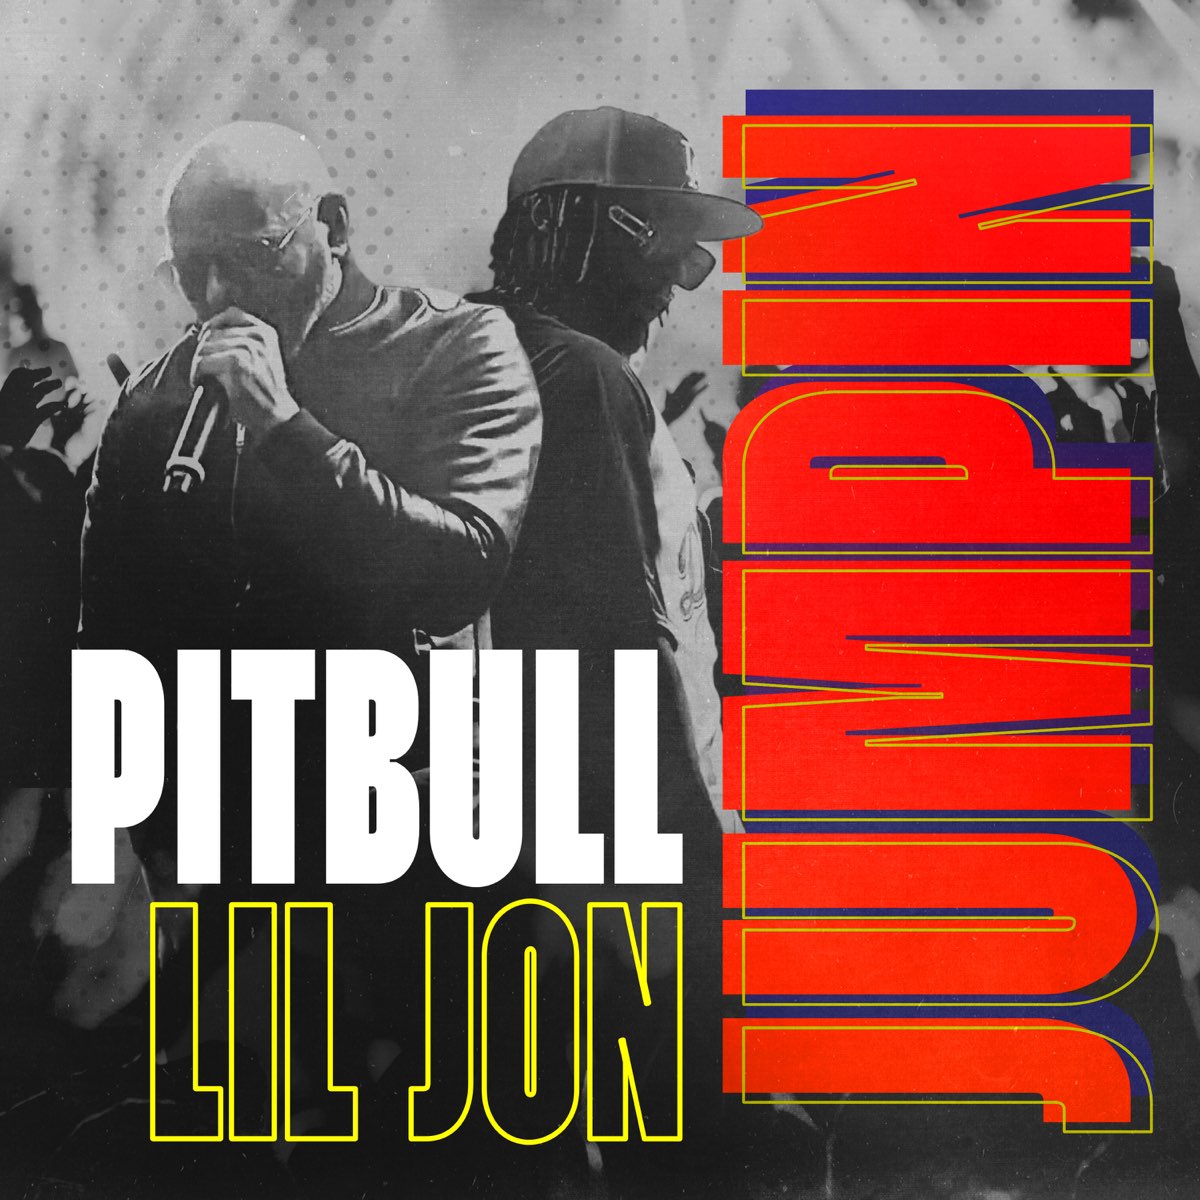 Pitbull & Lil Jon - Jumpin